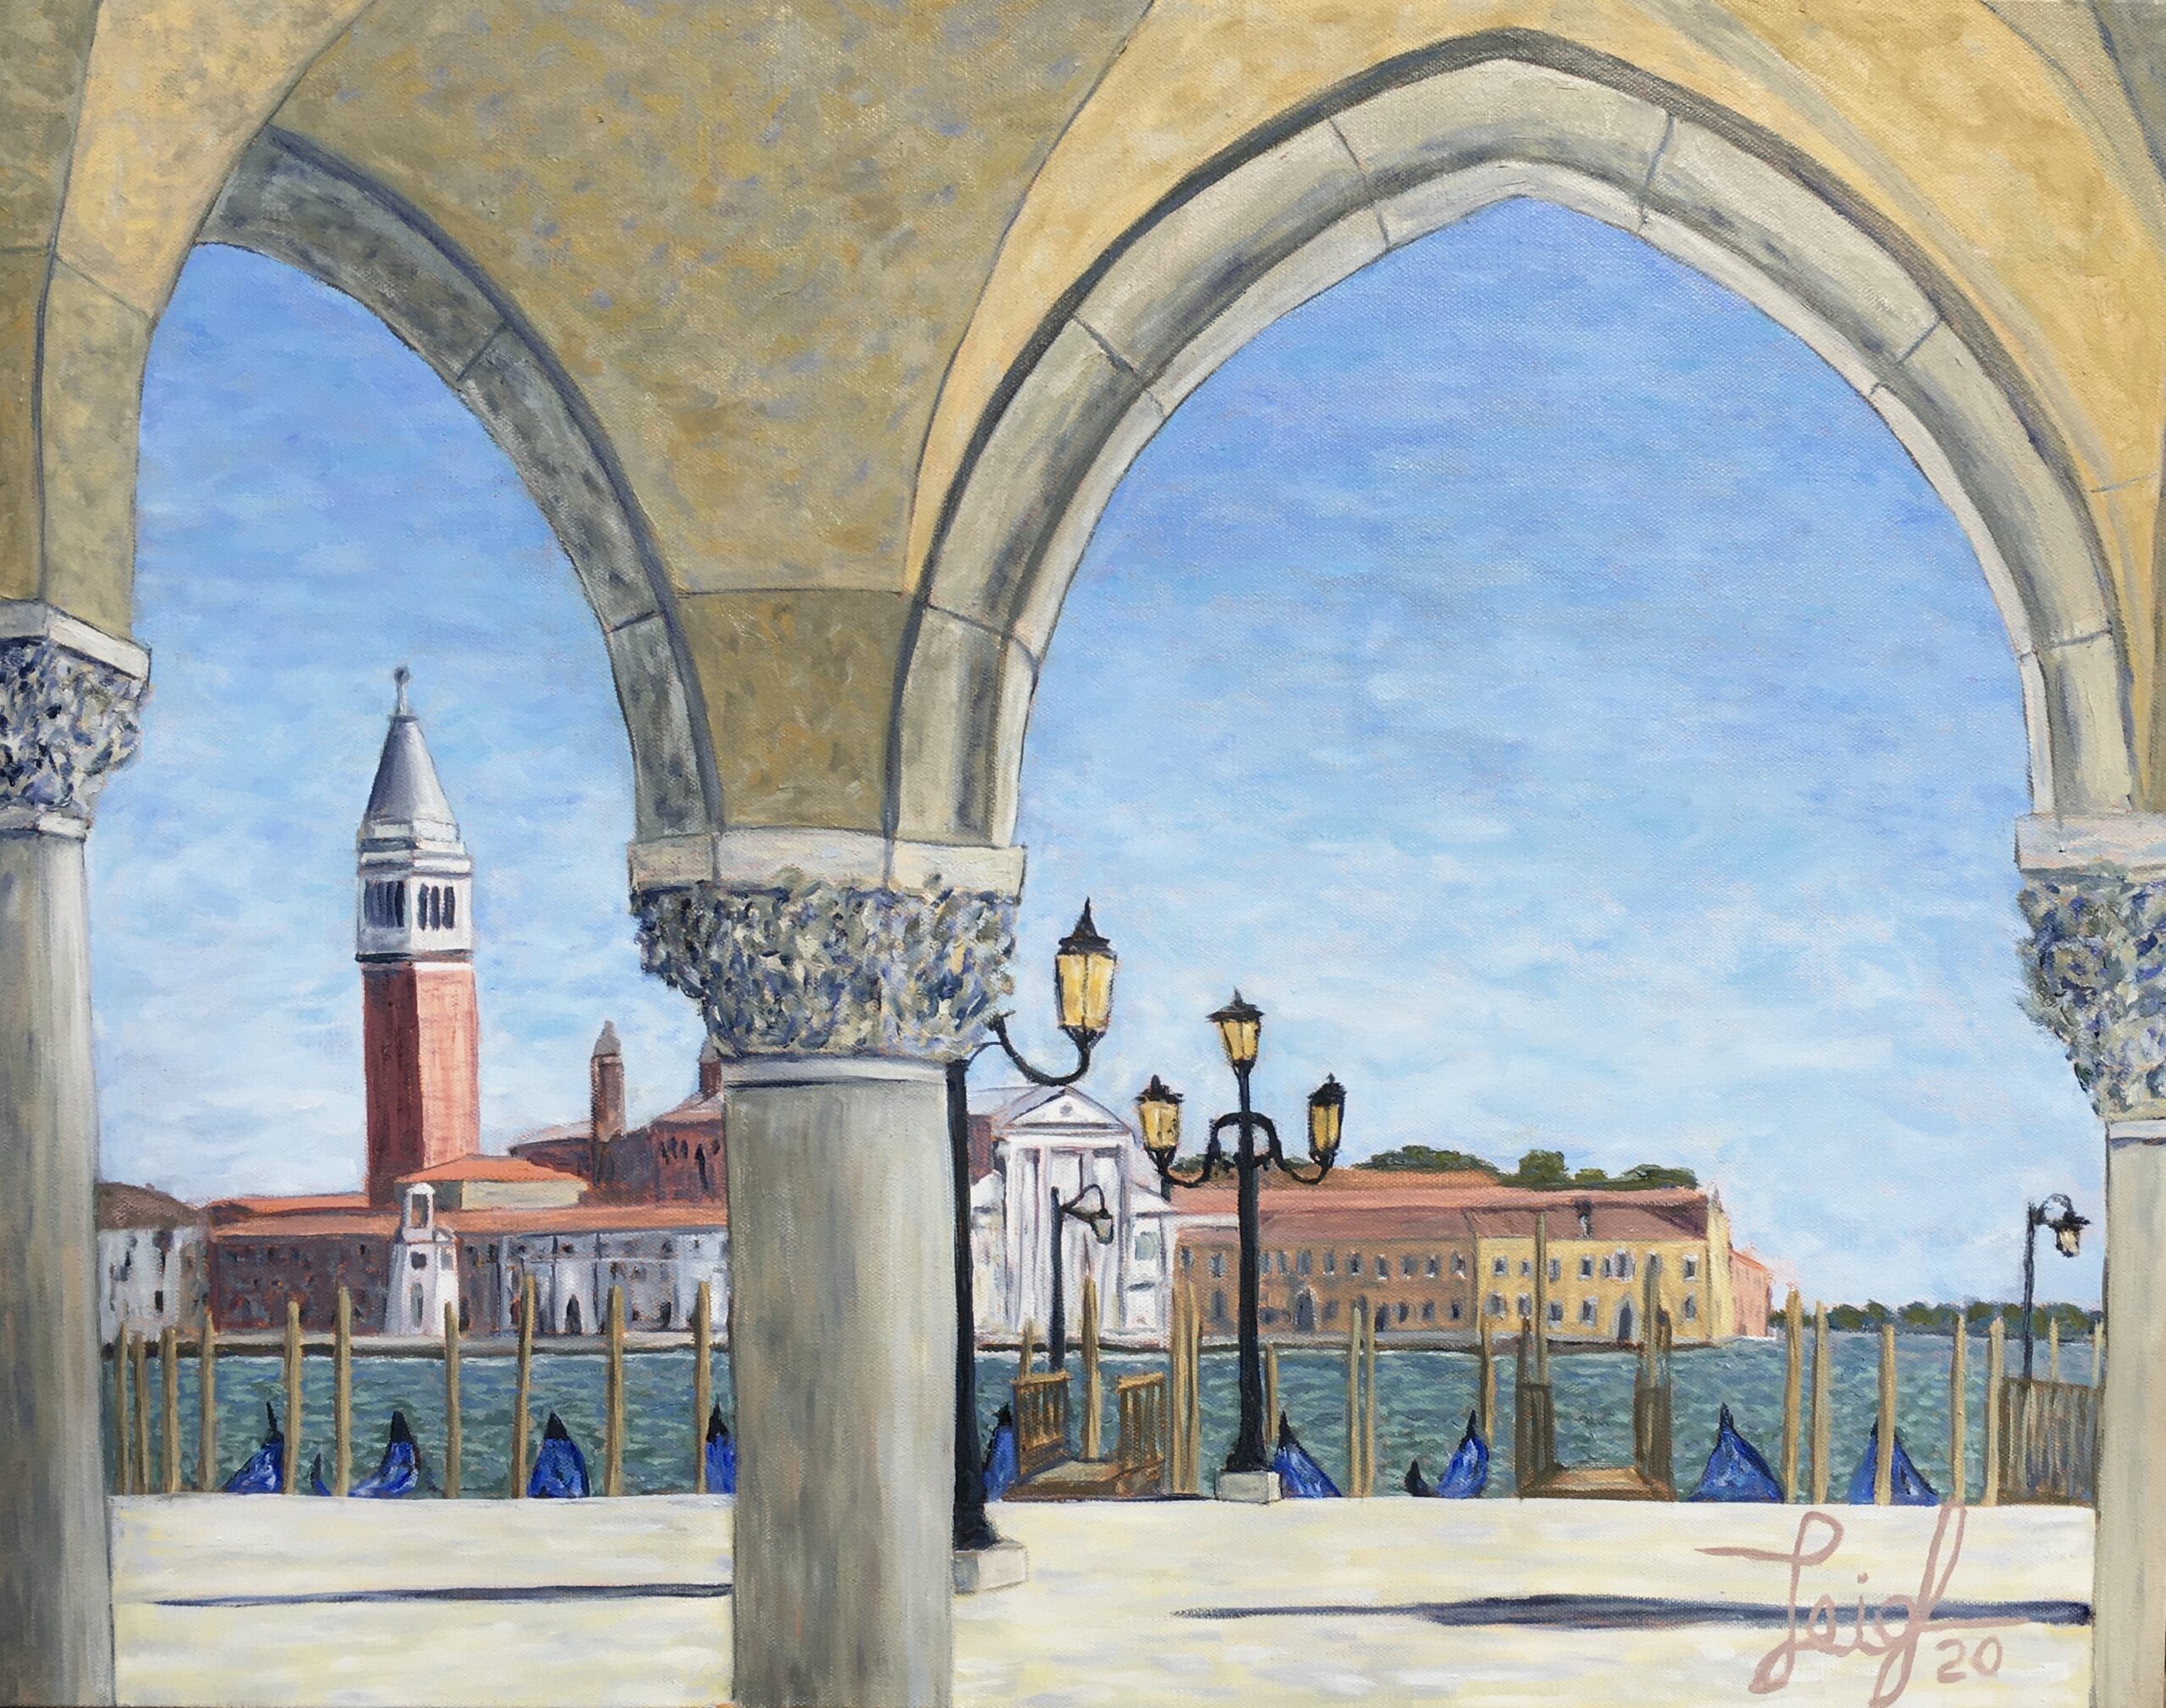 Arches Framing San Giorgio Maggiore (#18) 
2020  •  28 x 22